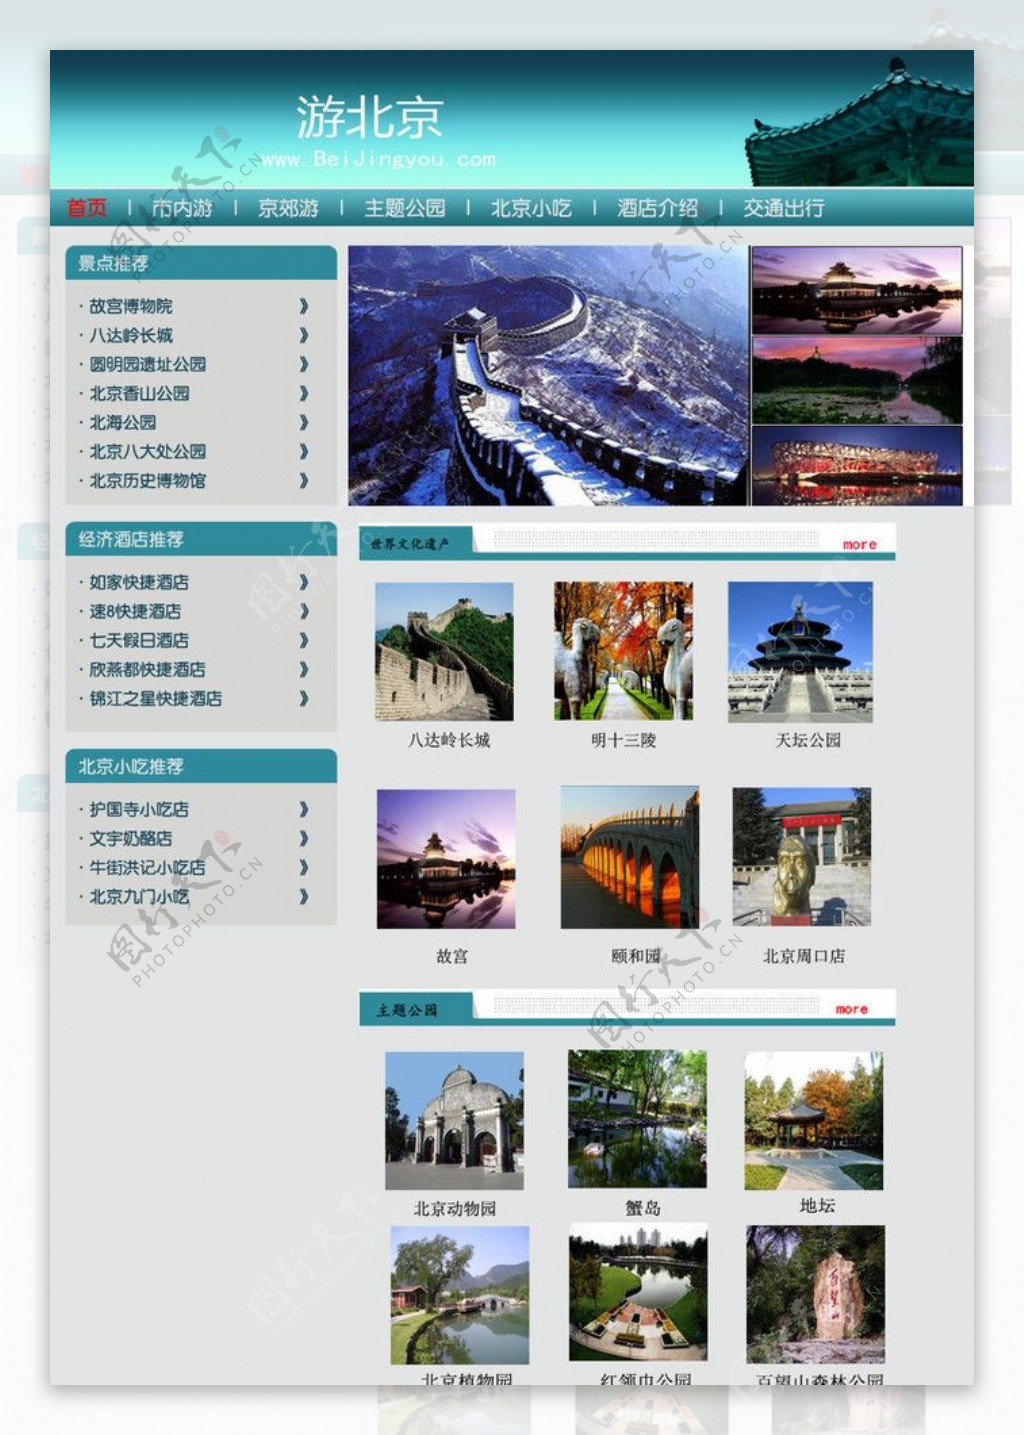 北京旅游网站首页图片